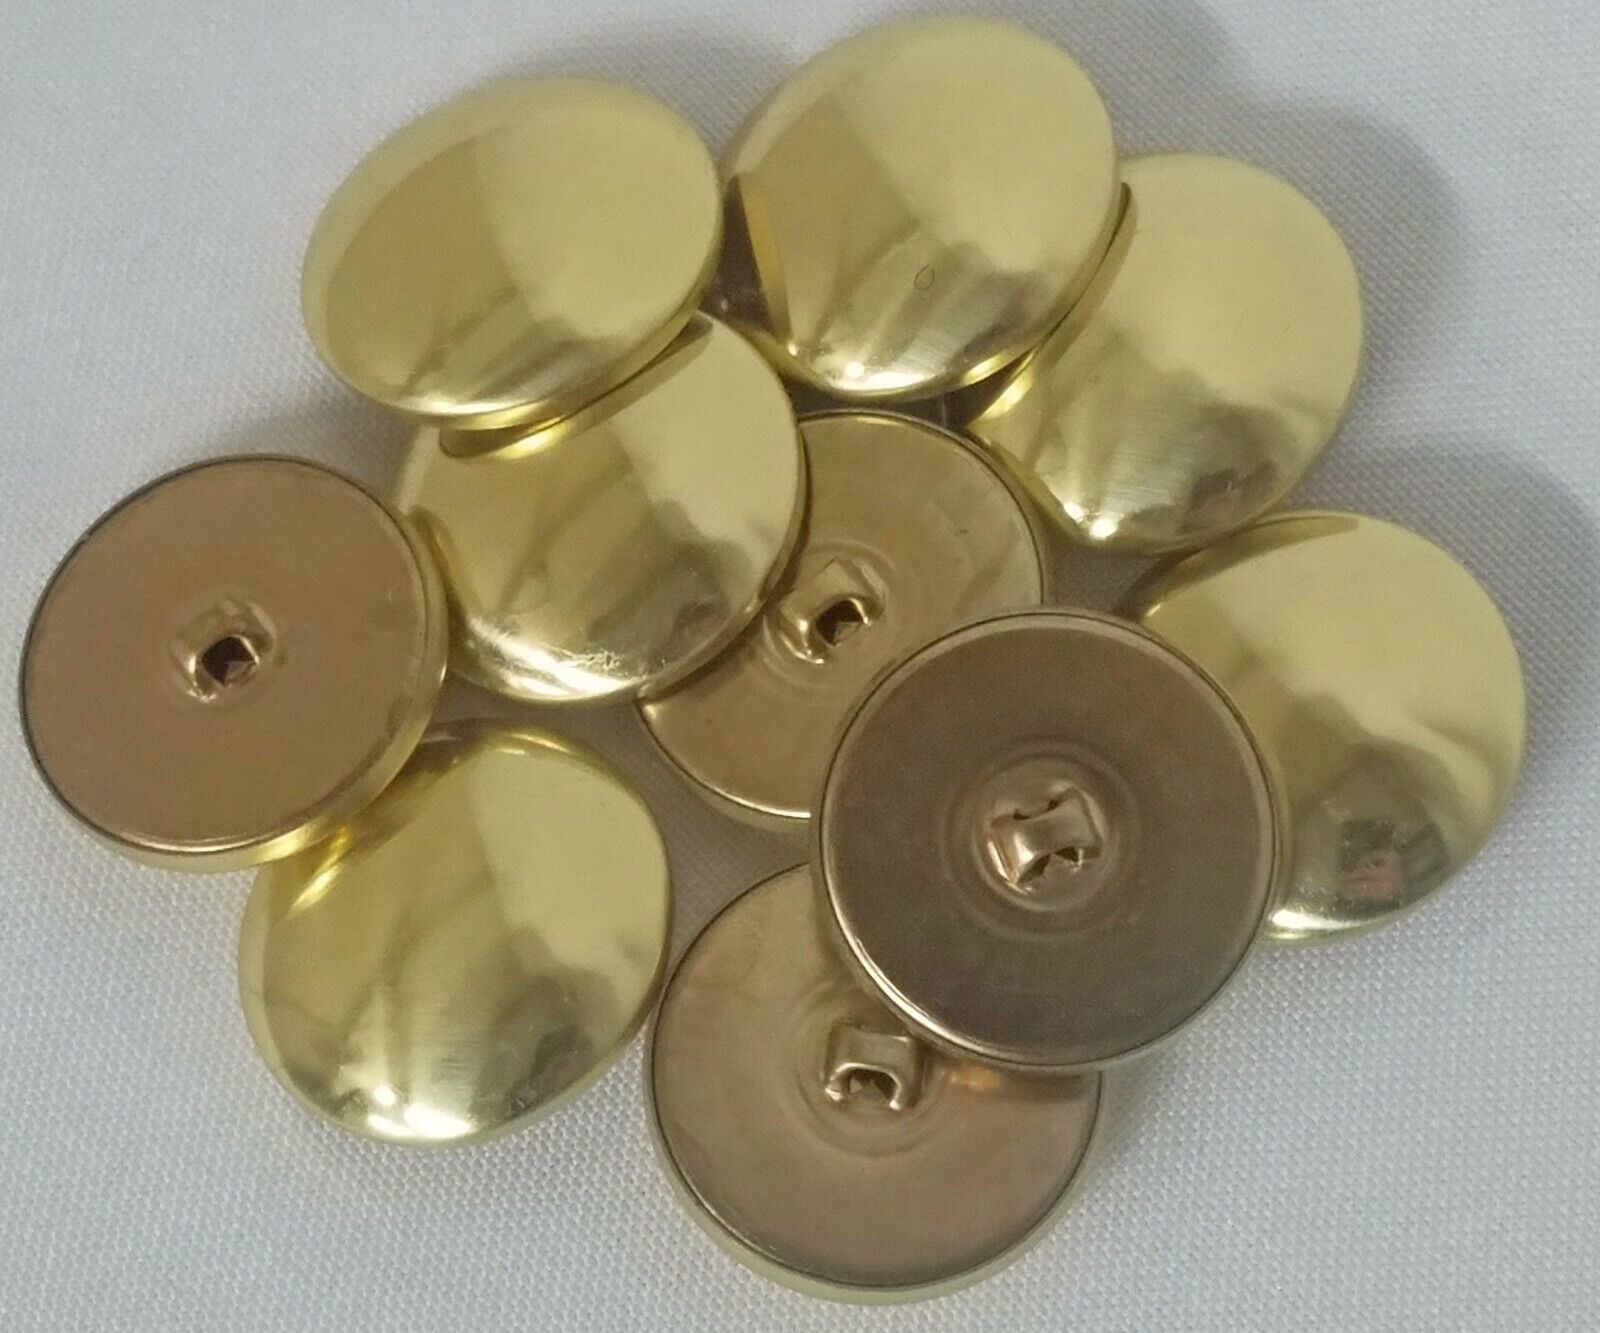 10 Count Buttons - Brass Metallic Gold Shank Dutch Costume Coat Buttons M211.41 - $5.00